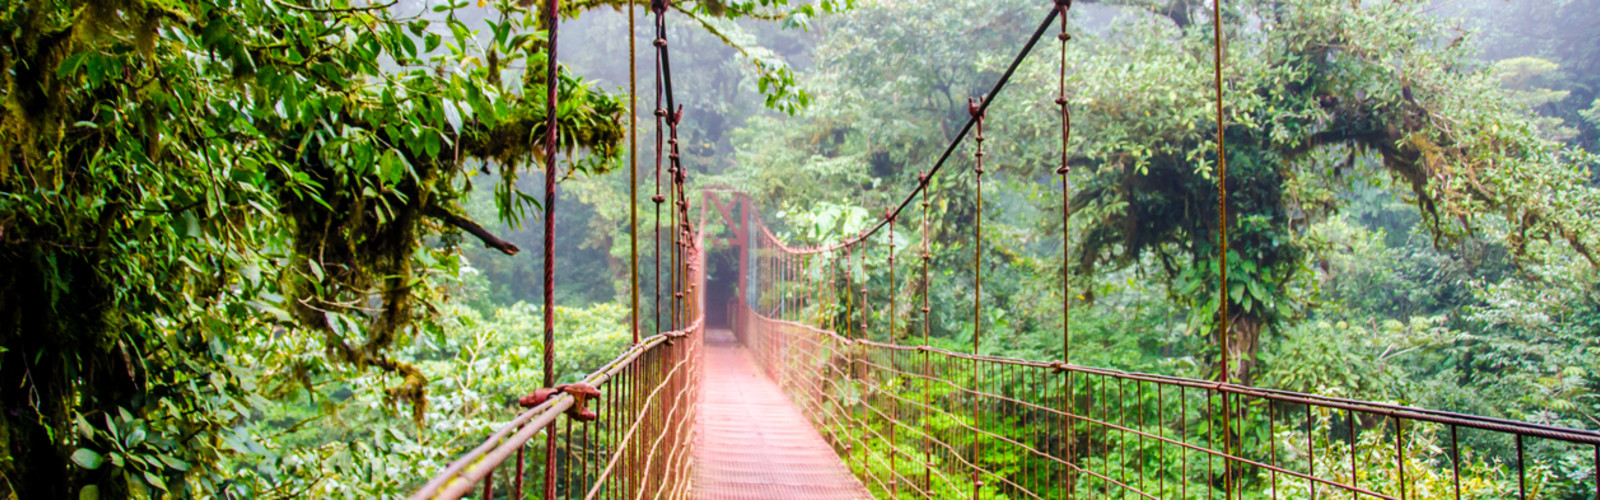 Pont suspendu dans une forêt tropicale.